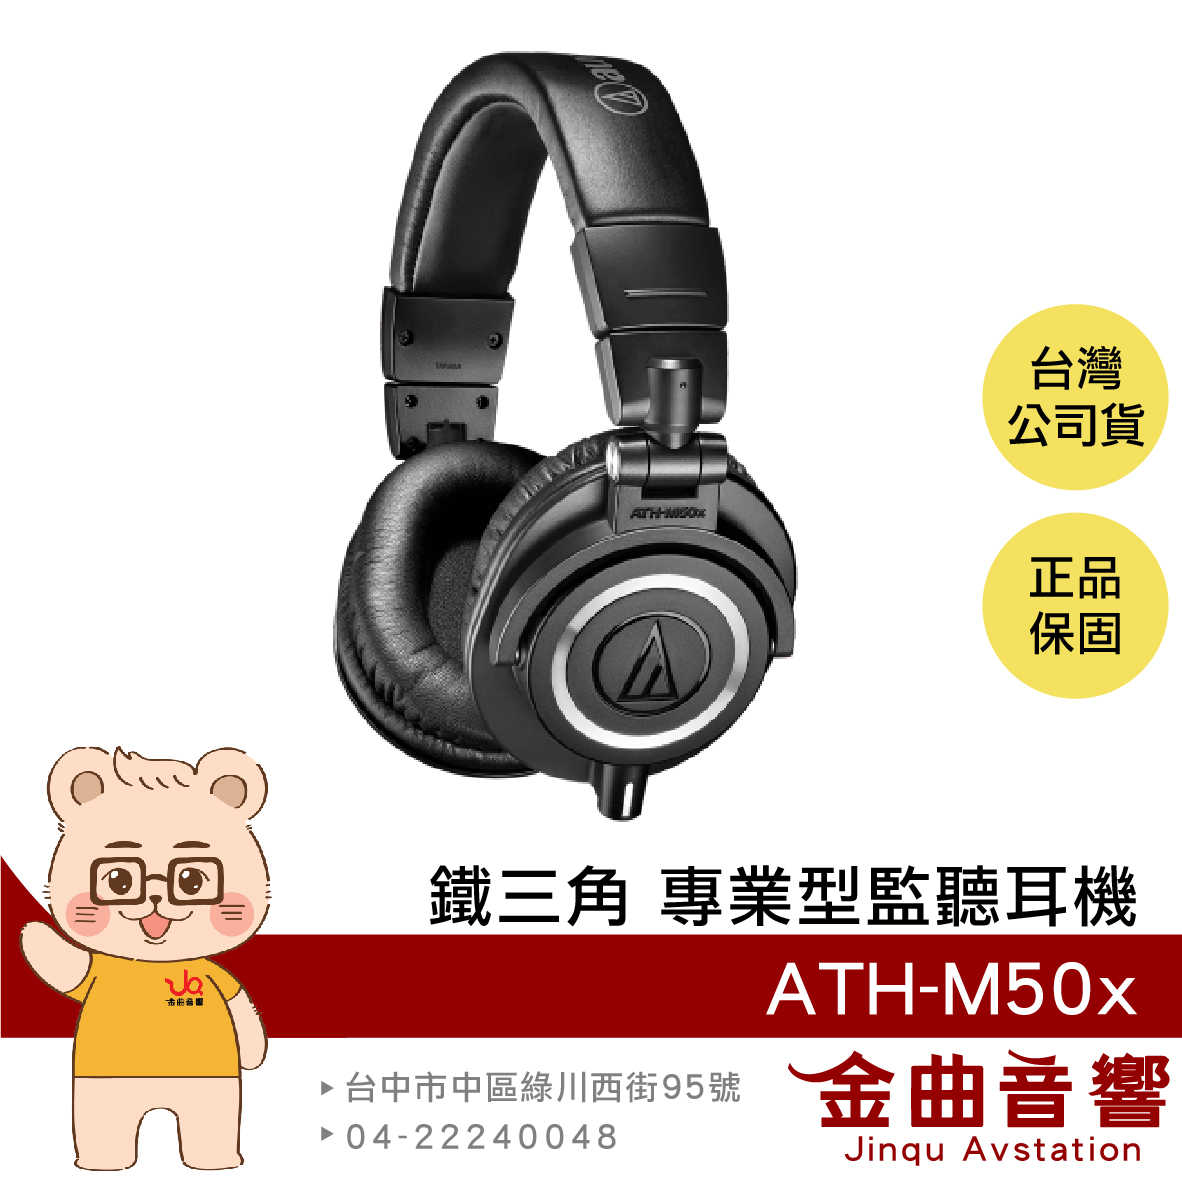 鐵三角 ATH-M50x 黑色 高音質 錄音室用 專業 監聽 耳罩式 耳機 | 金曲音響